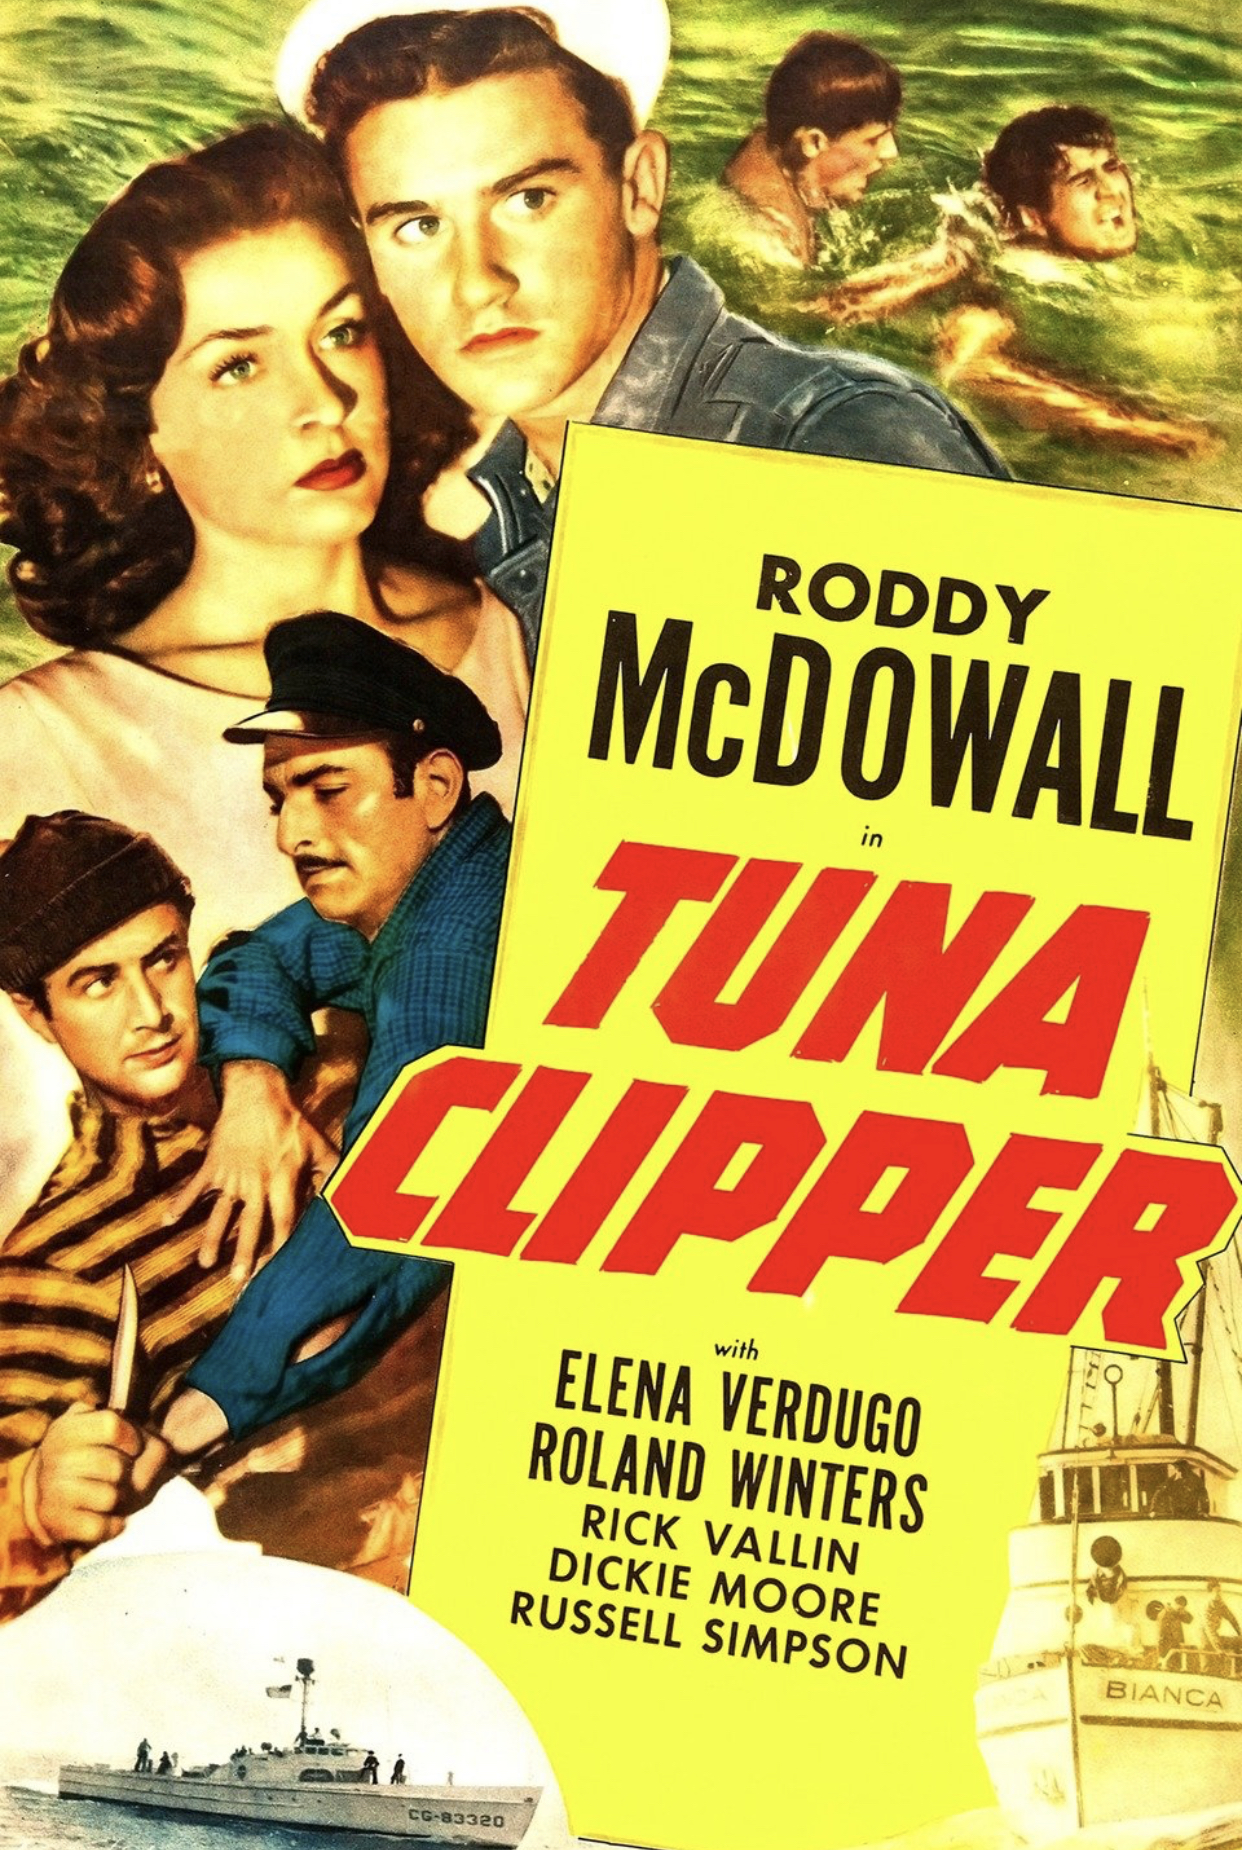 Tuna Clipper